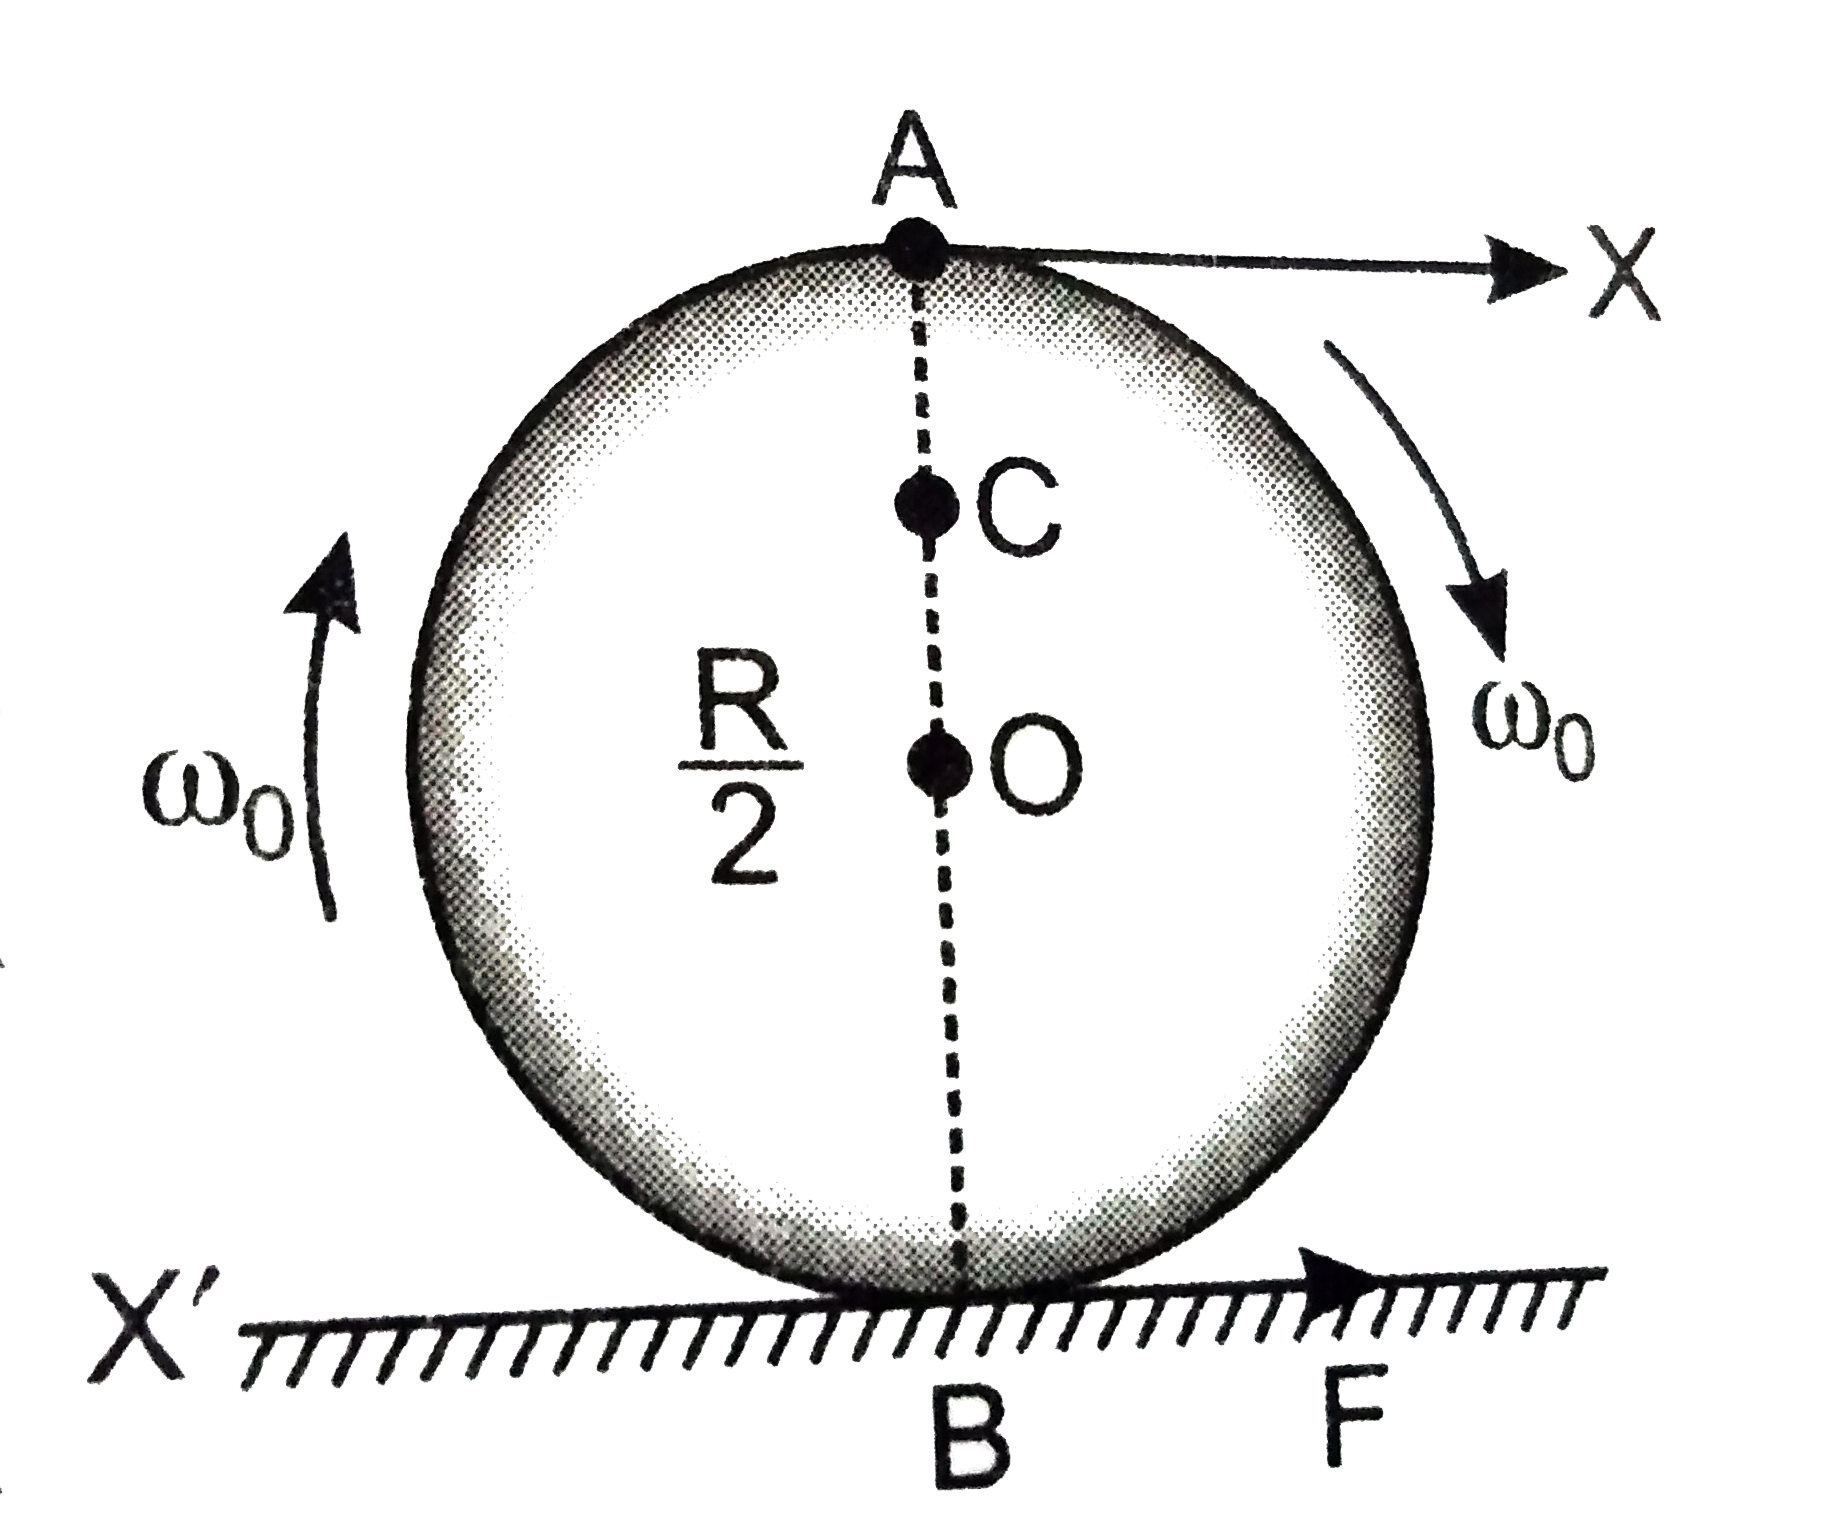 अपने अक्ष पर omega 0 कोणीय चाल से घूर्णन काने वाली किसी चक्रिका को धीरे से (स्थानीय धक्का दिए बिना ) किसी पूर्णतः घर्षण रहित मेज पर रखा जाता है|चक्रिका की त्रिज्या R है| चित्र में दर्शयी गयी चक्रिका के बिंदुओं A ,B तथा C पर रैखिक वेग क्या है? क्या यह चक्रिका चित्र में दर्शायी दिशा में लोटनिक गति करेगीं?